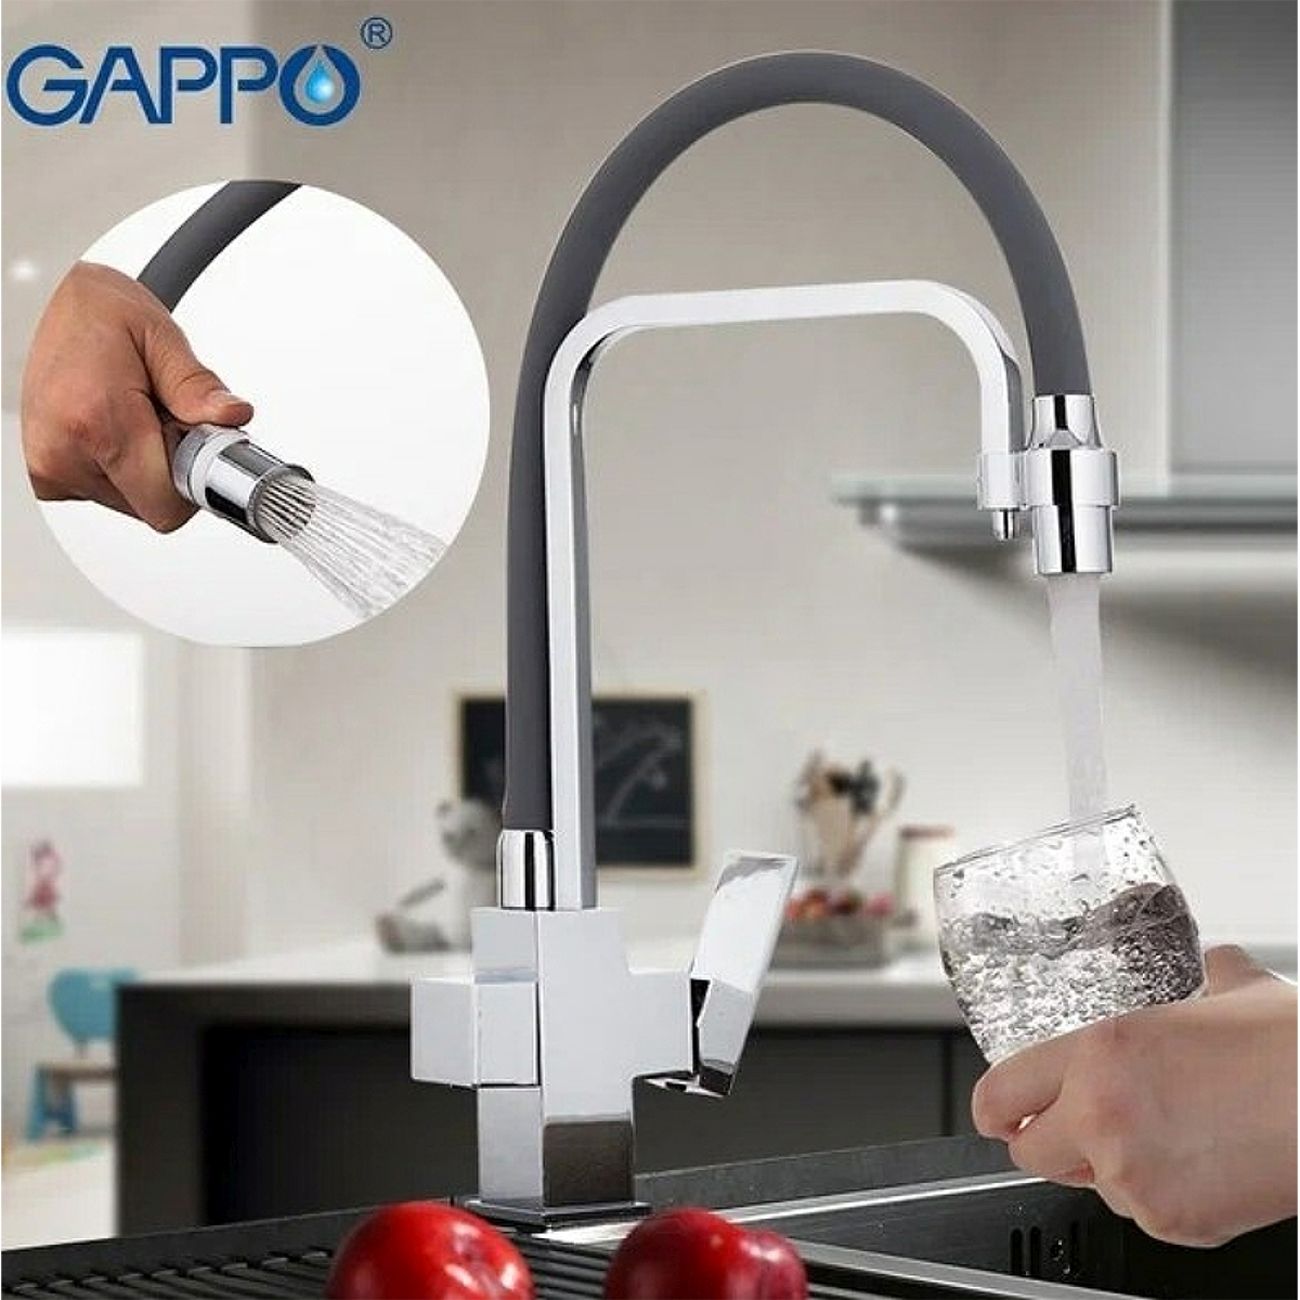 Gappo смеситель для кухни черный. Смеситель Gappo g4398-4. Смеситель Gappo g4398-1. Смеситель Gappo кухня g4398 сатин. Кухонный смеситель Gappo g4398.